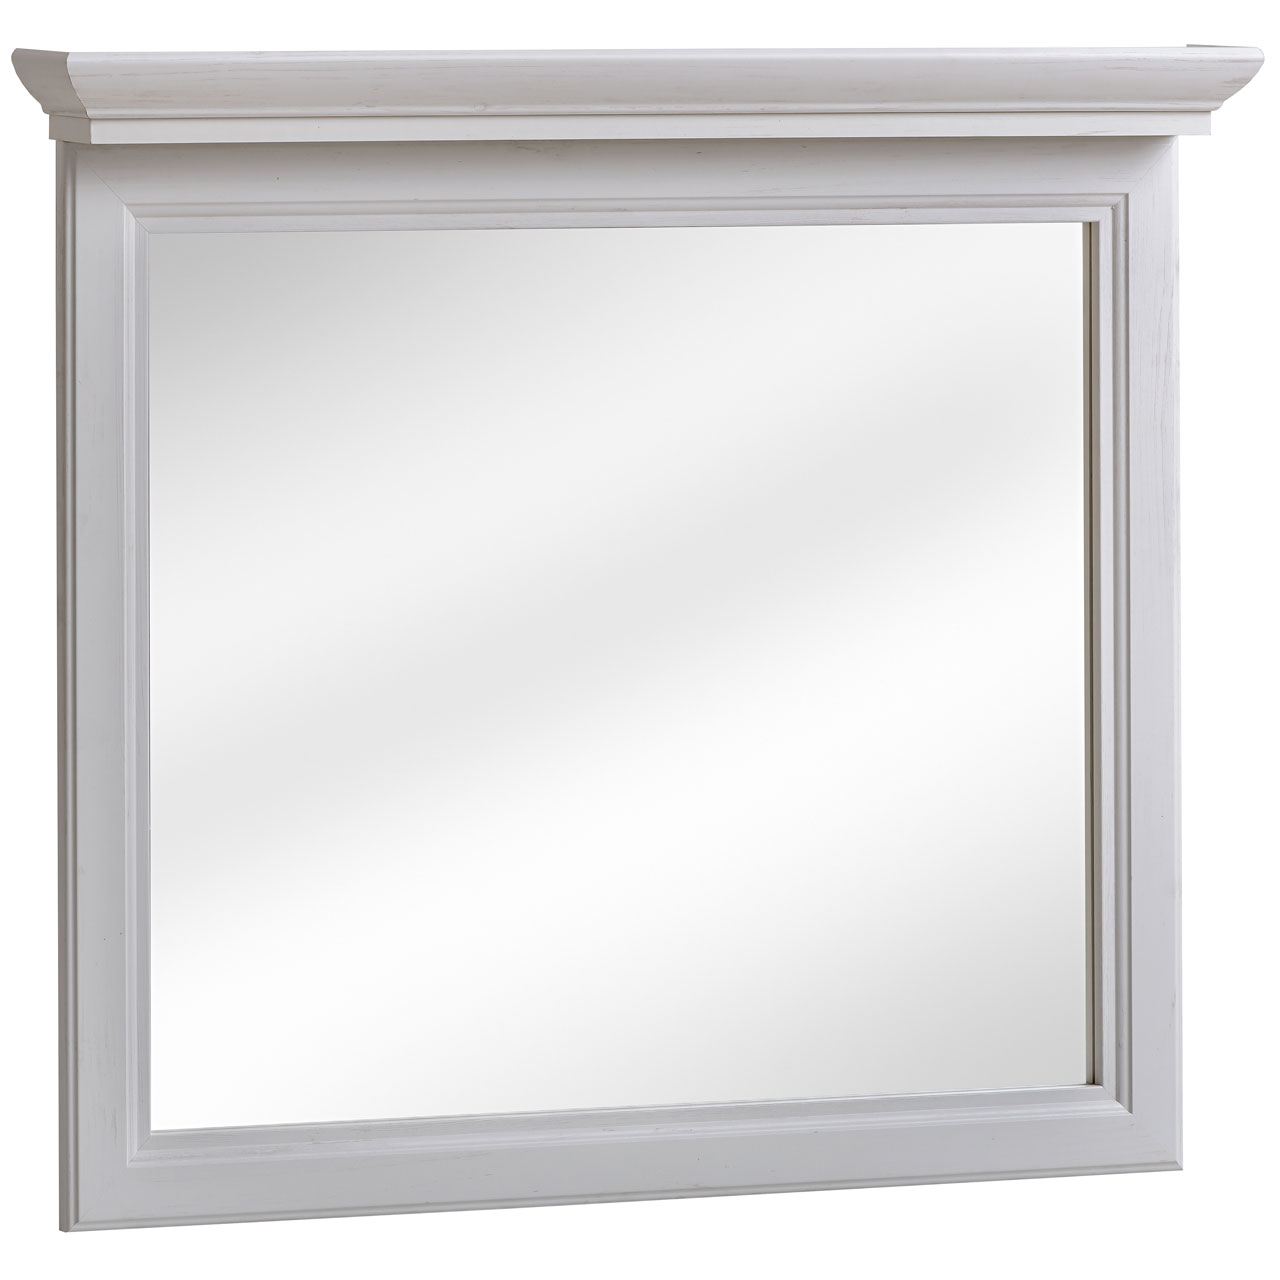 Zrcadlo CASTEL 841 bílé